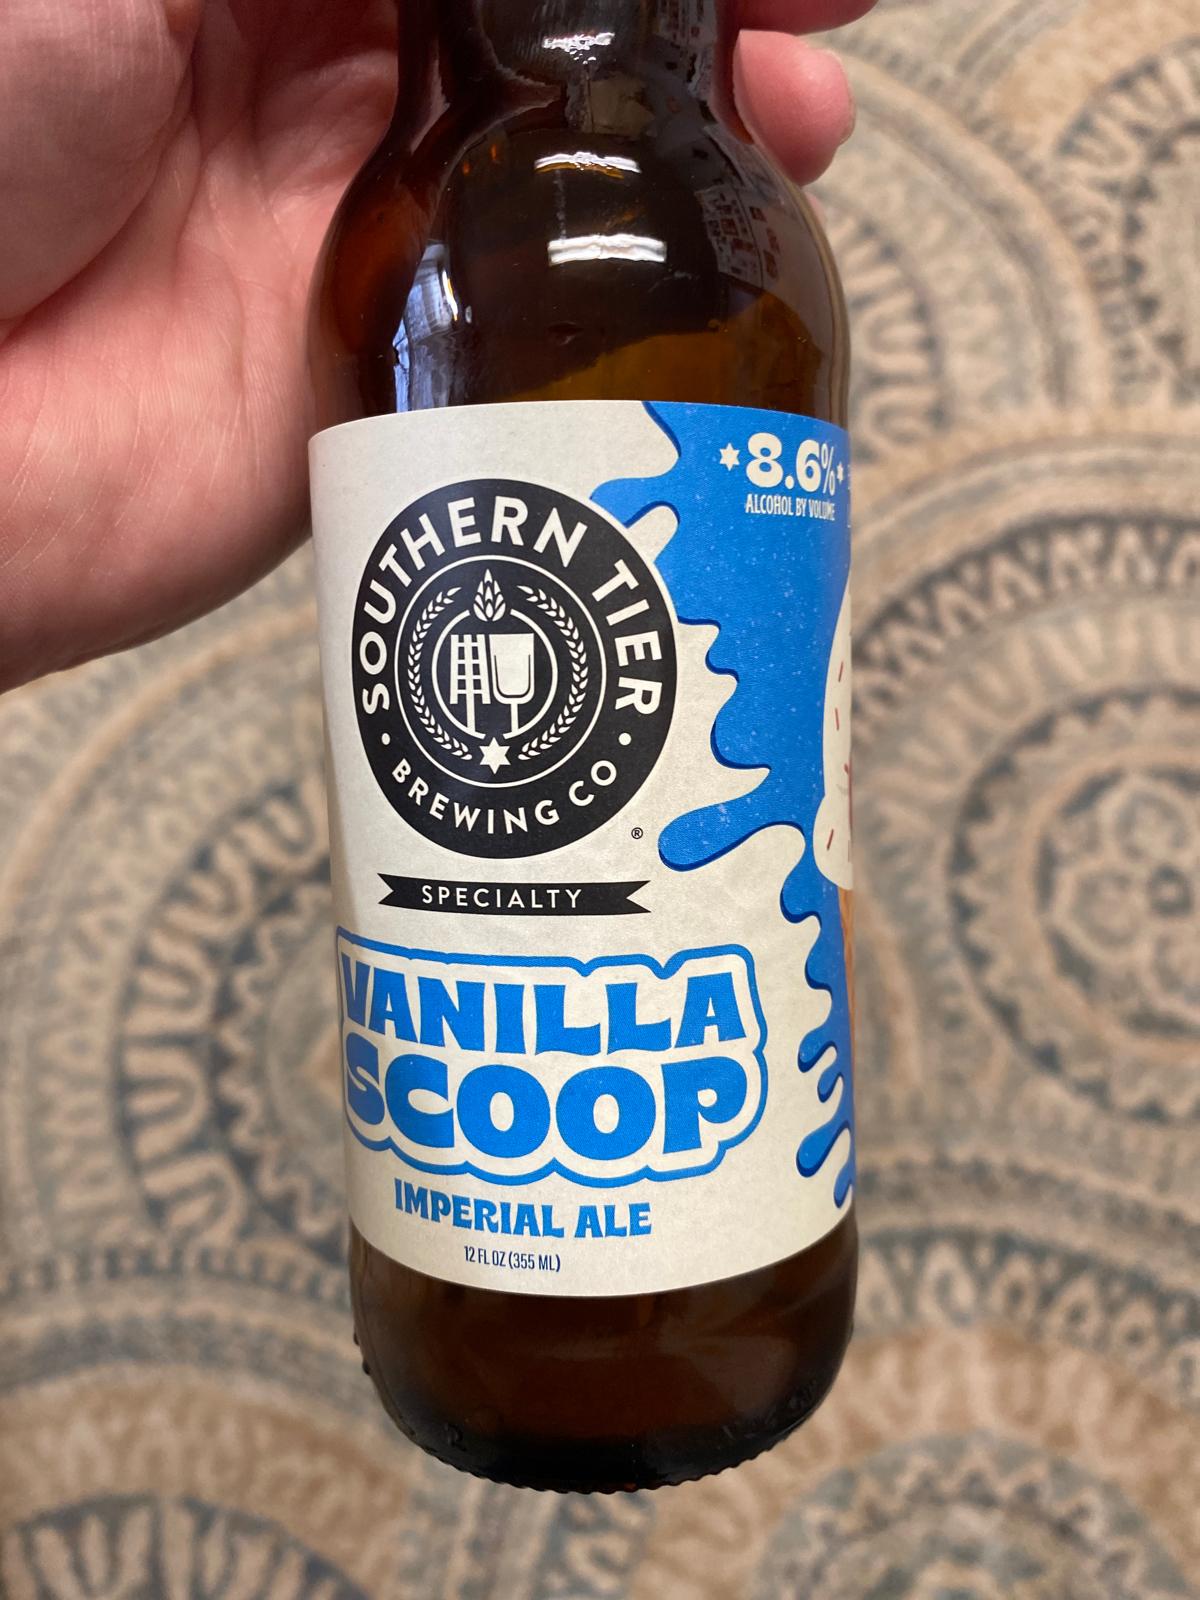 Vanilla Scoop